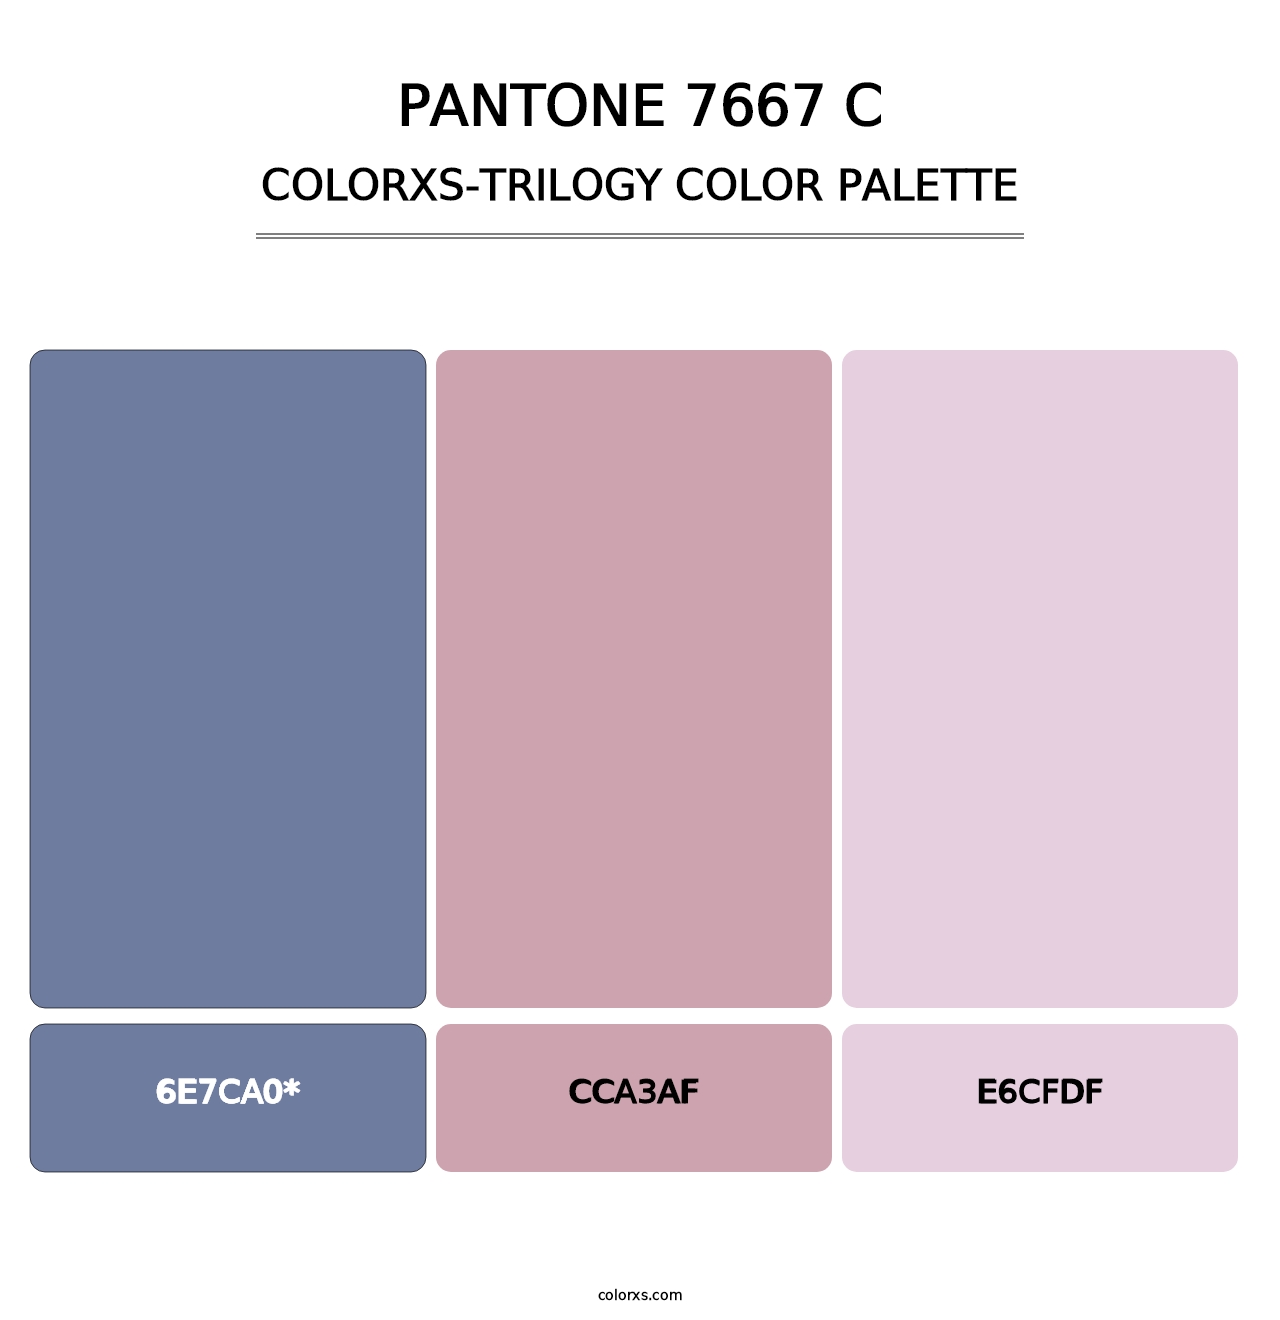 PANTONE 7667 C - Colorxs Trilogy Palette